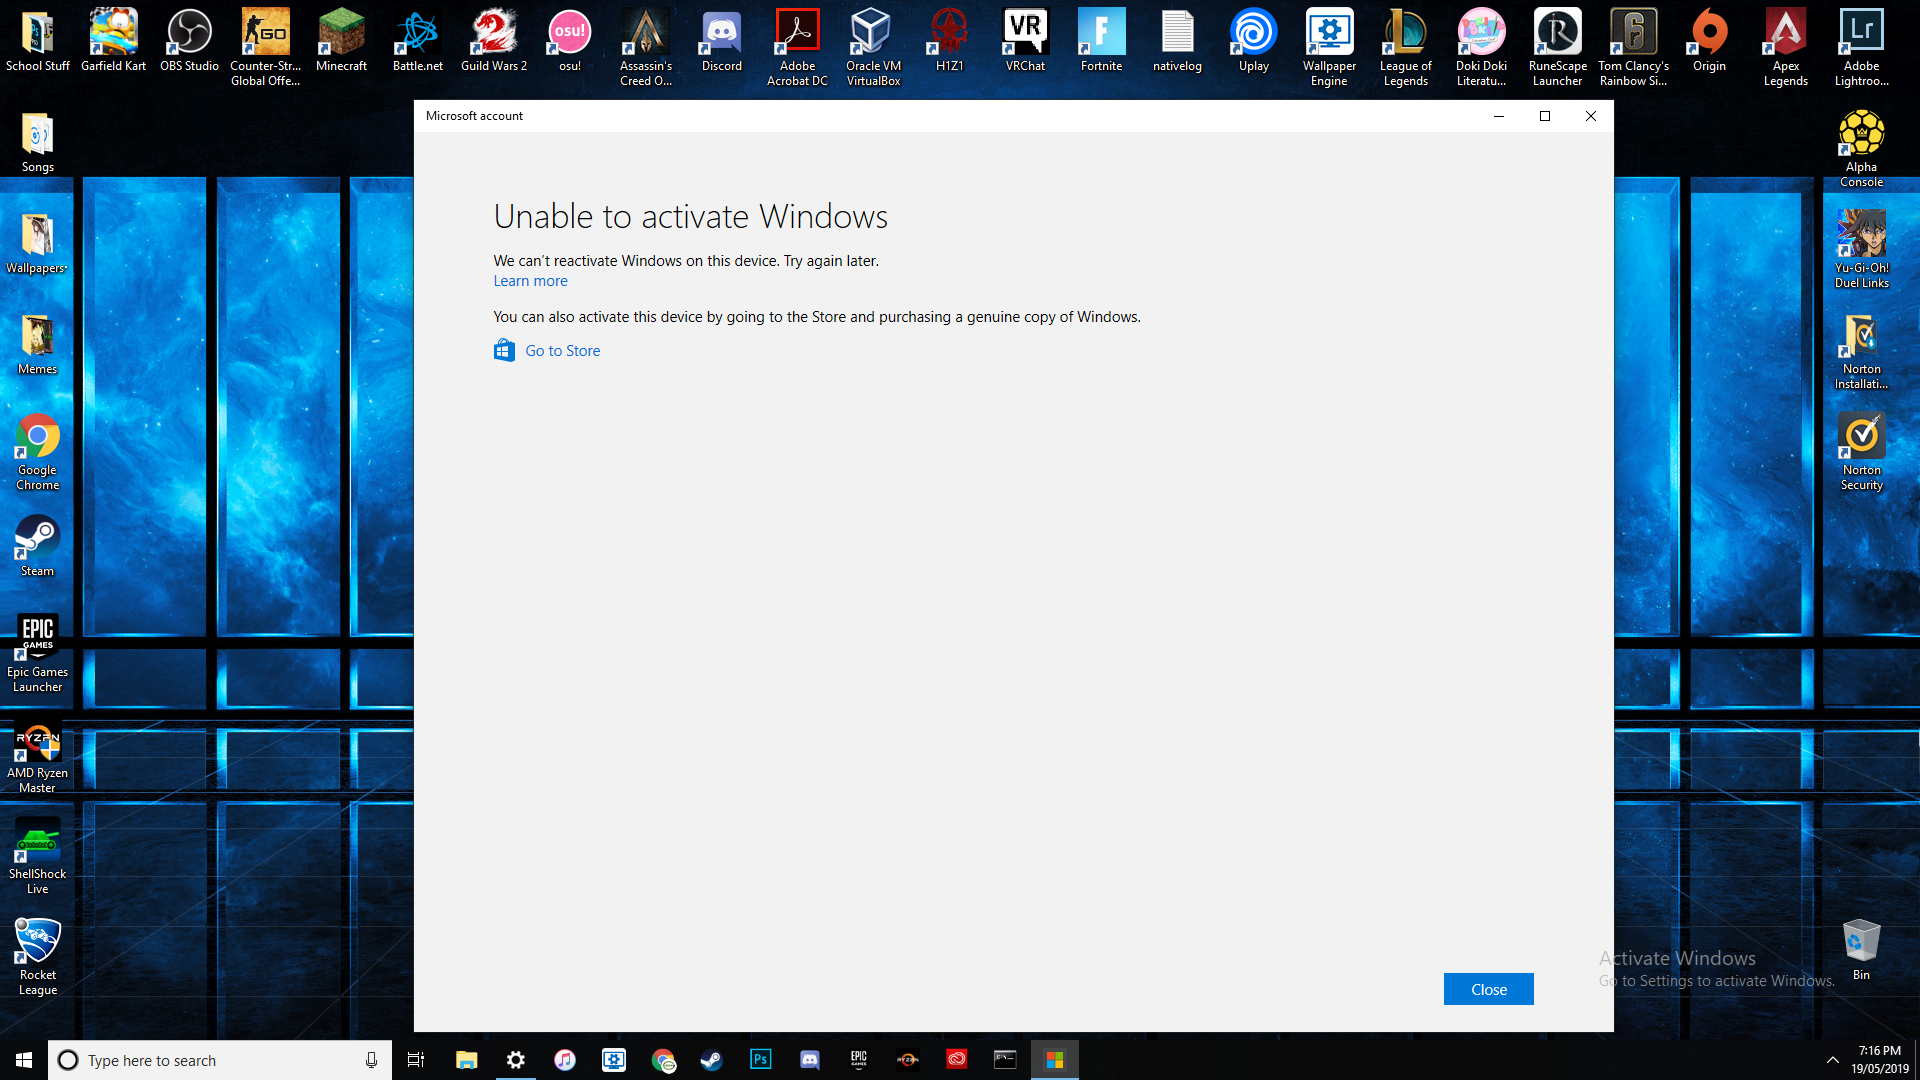 Windows 10 Activation a5c2a968-efa4-4214-af61-77b7537779c9?upload=true.png